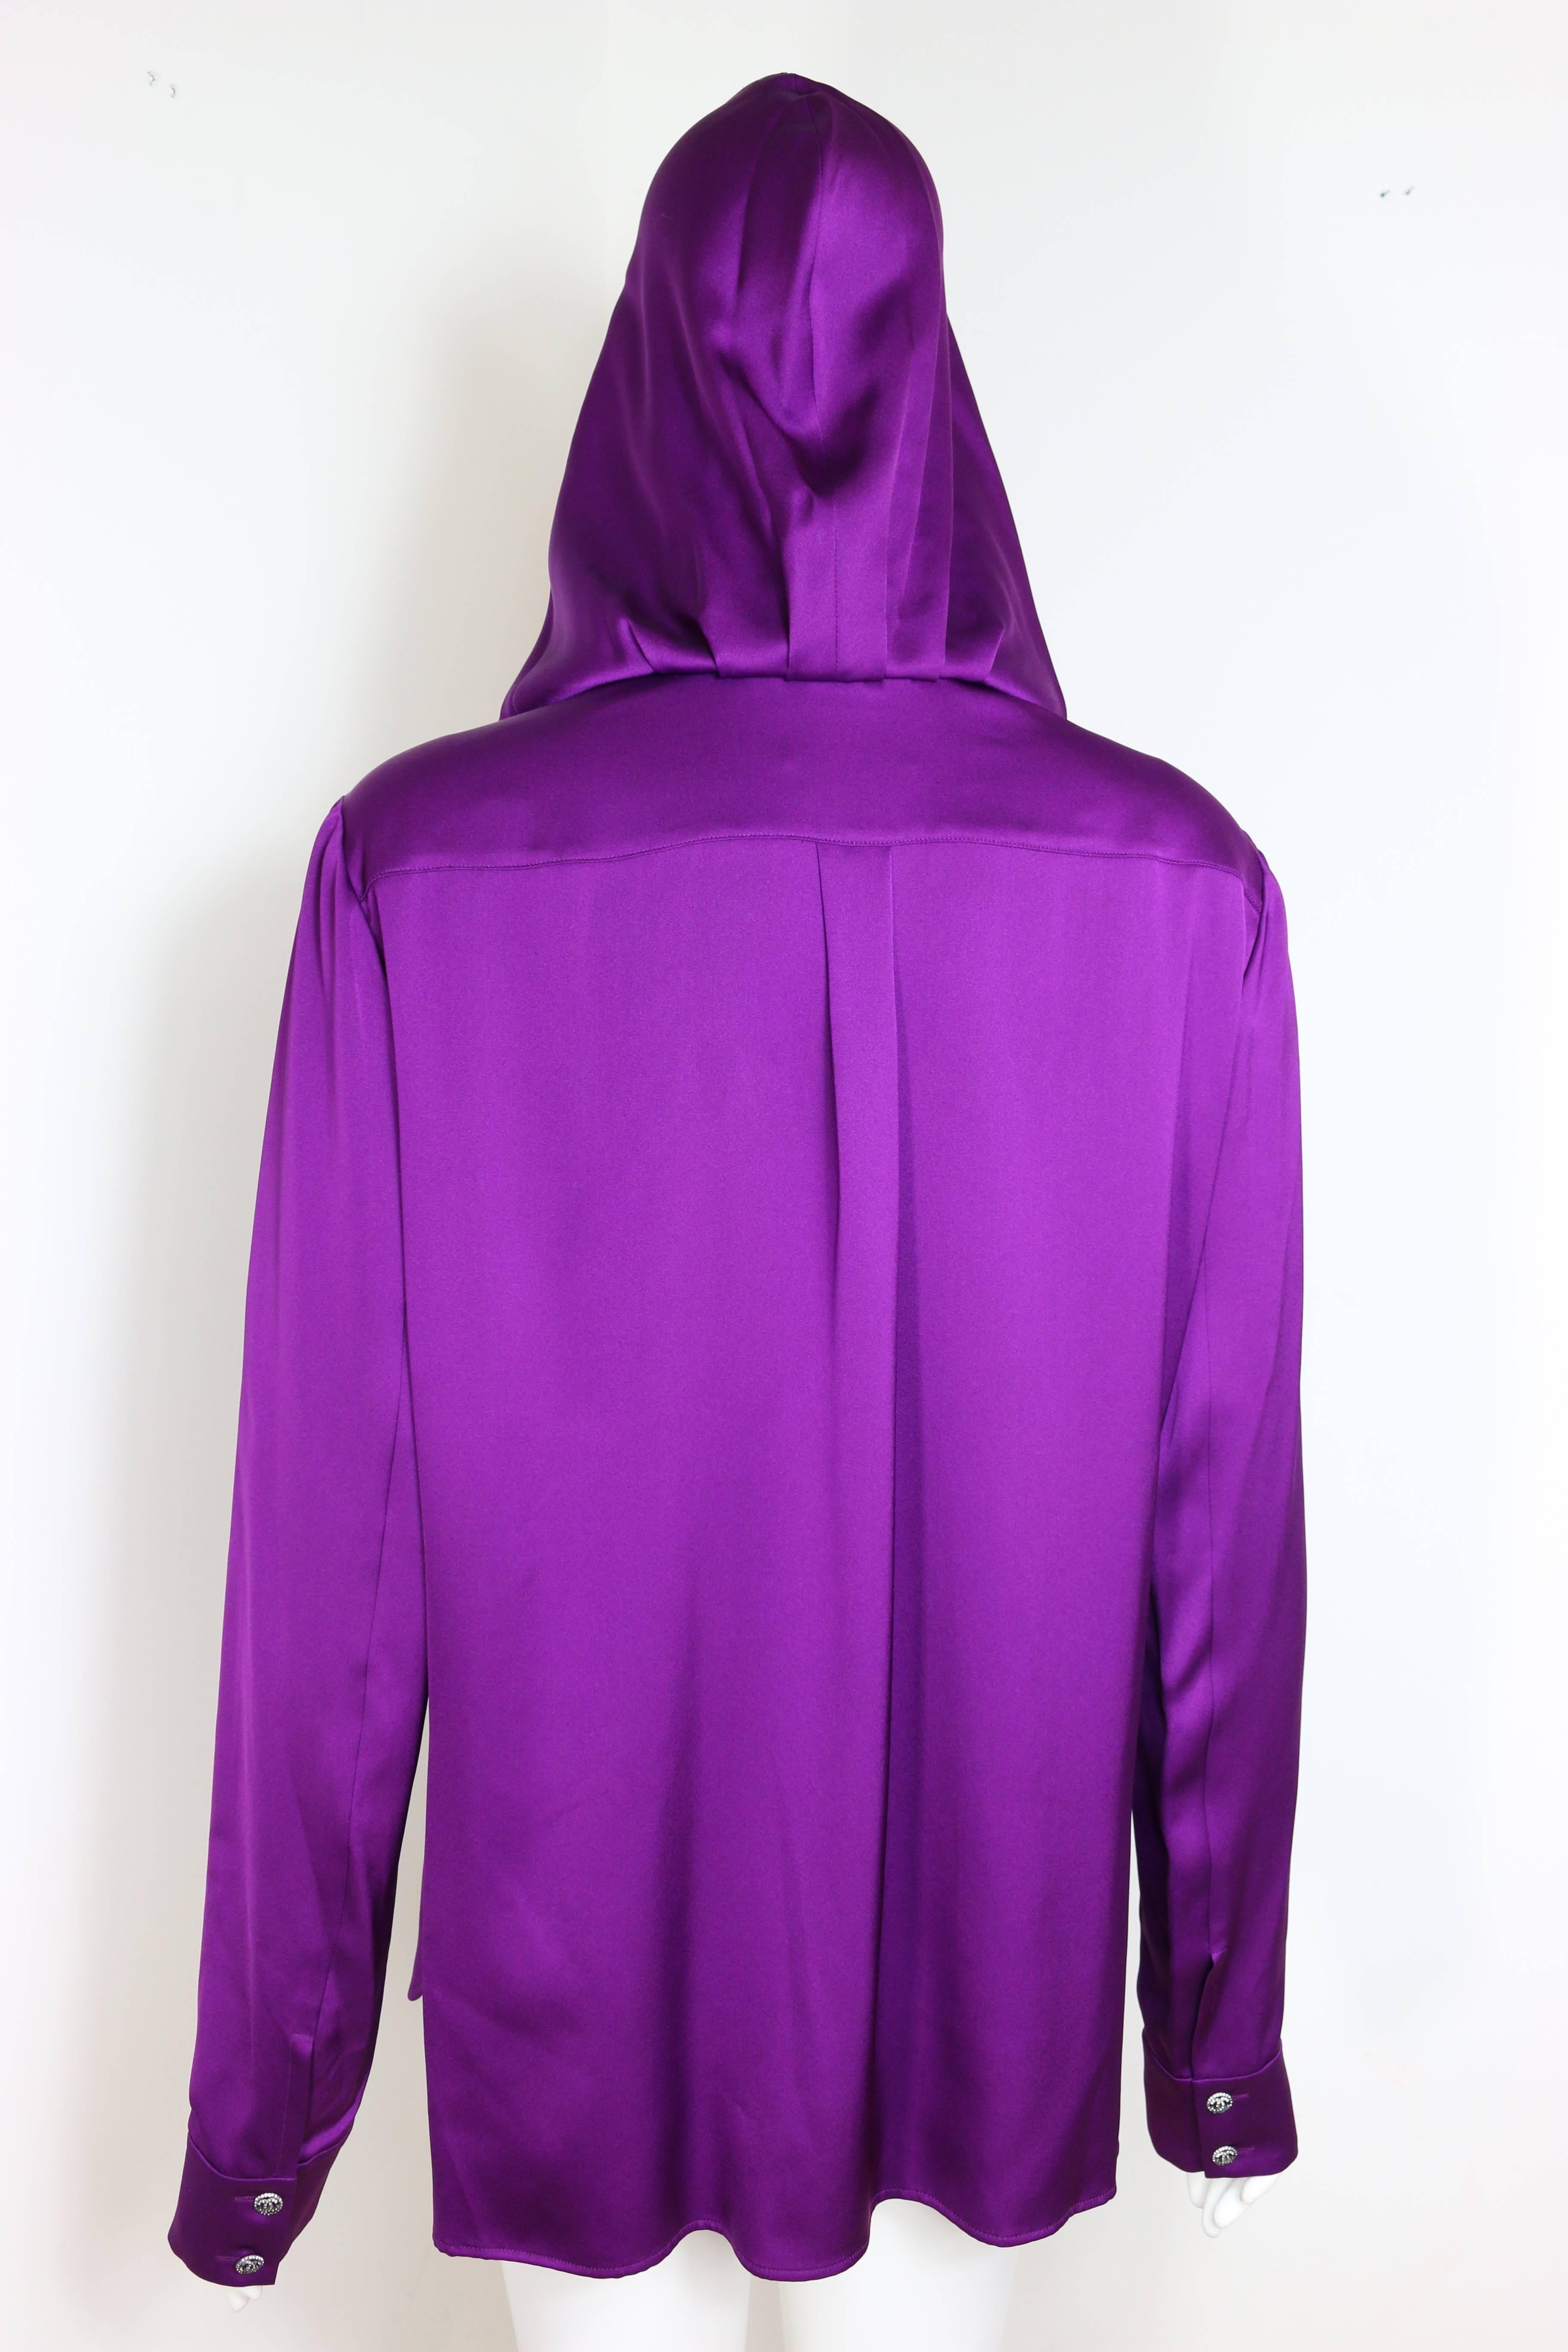 Violet Chanel - Chemise en soie violette avec capuche amovible  en vente